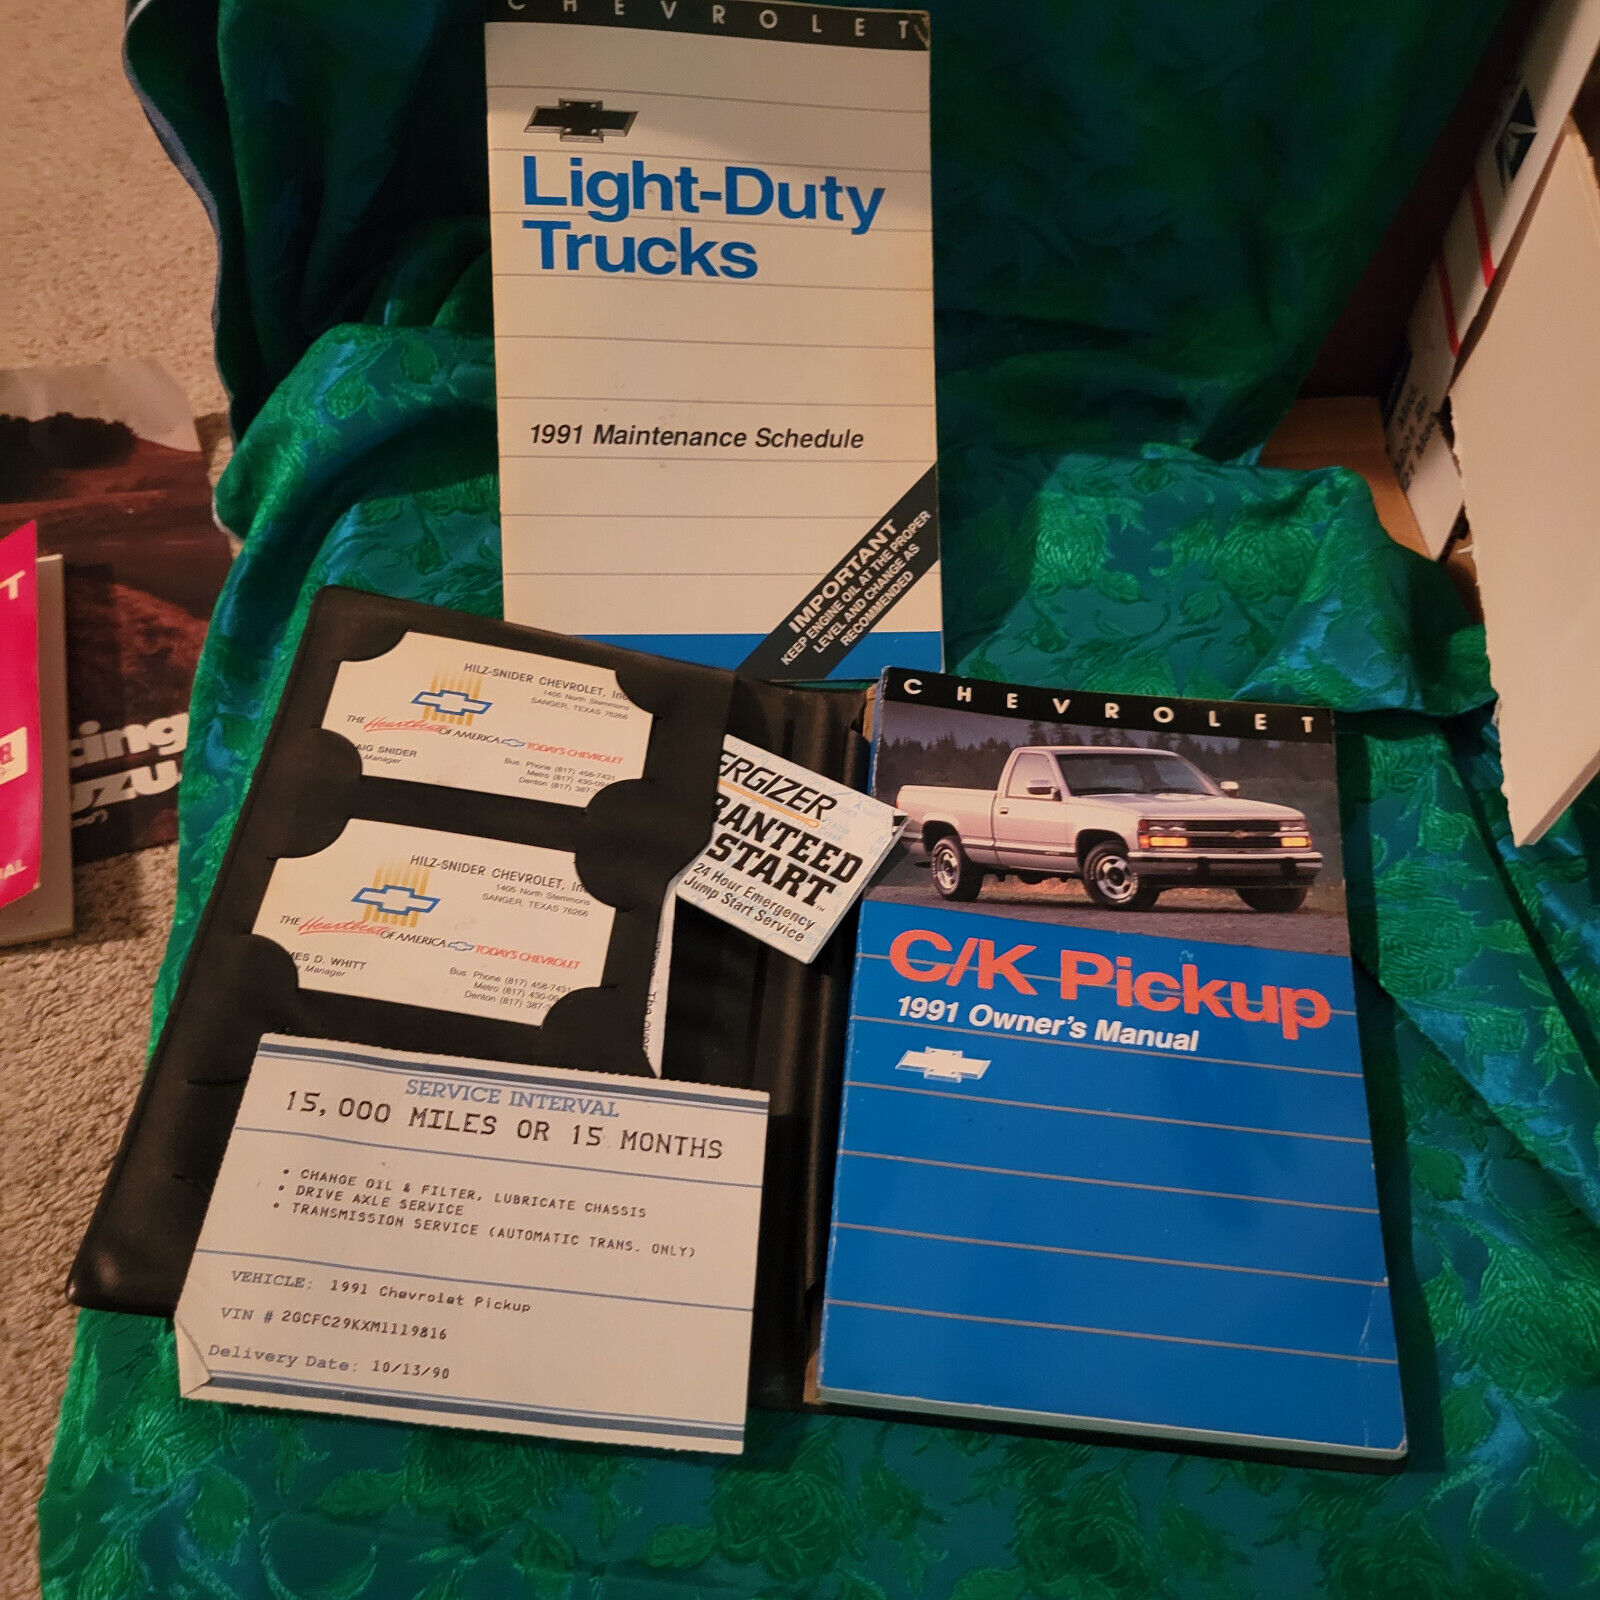 1991 Chevrolet Light Duty Trucks C/K Pickup Owners Manual, Maint. Sch. Warranty